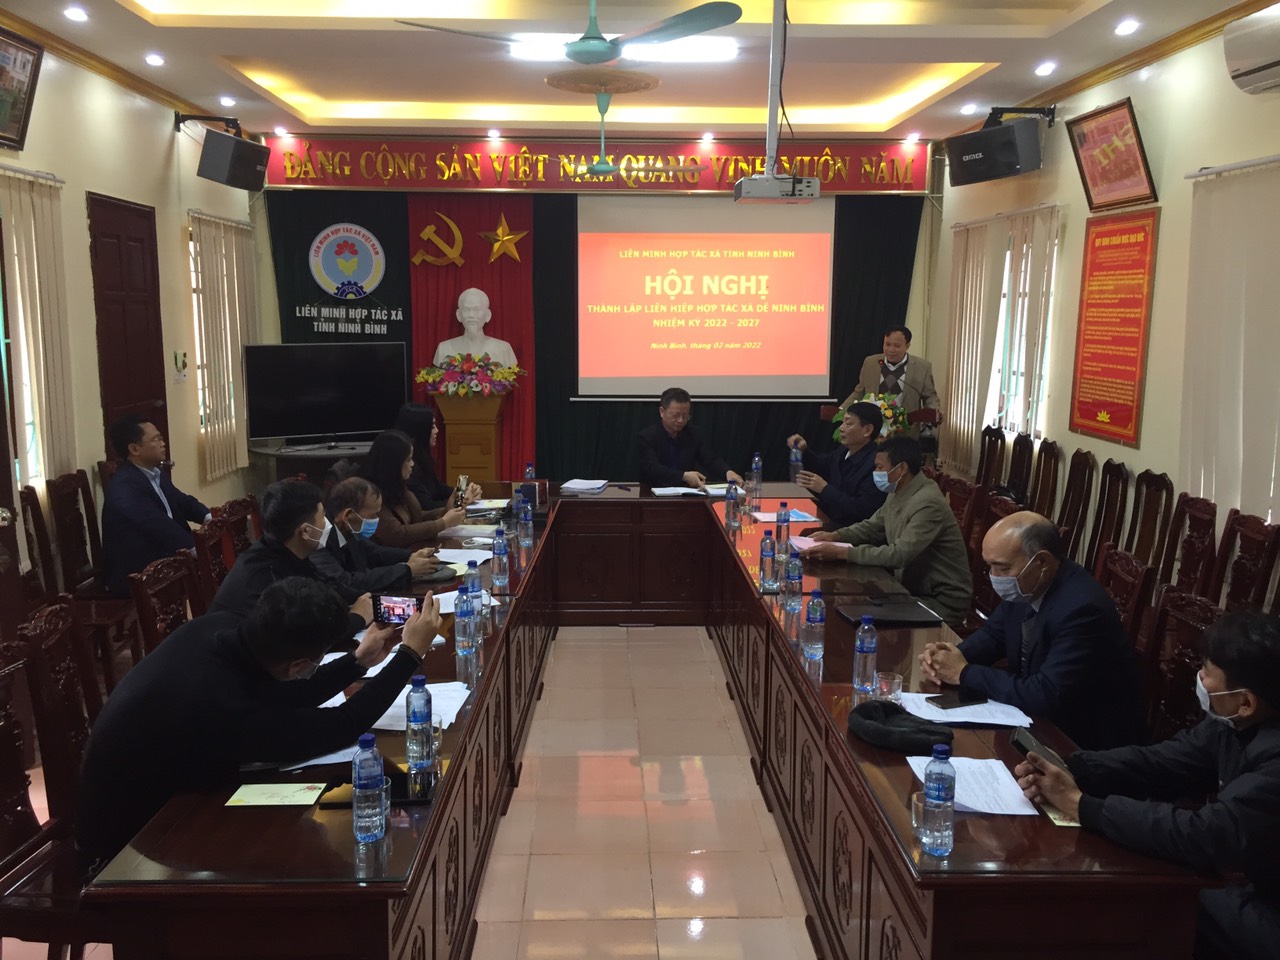 Thành lập Liên hiệp HTX Dê Ninh Bình